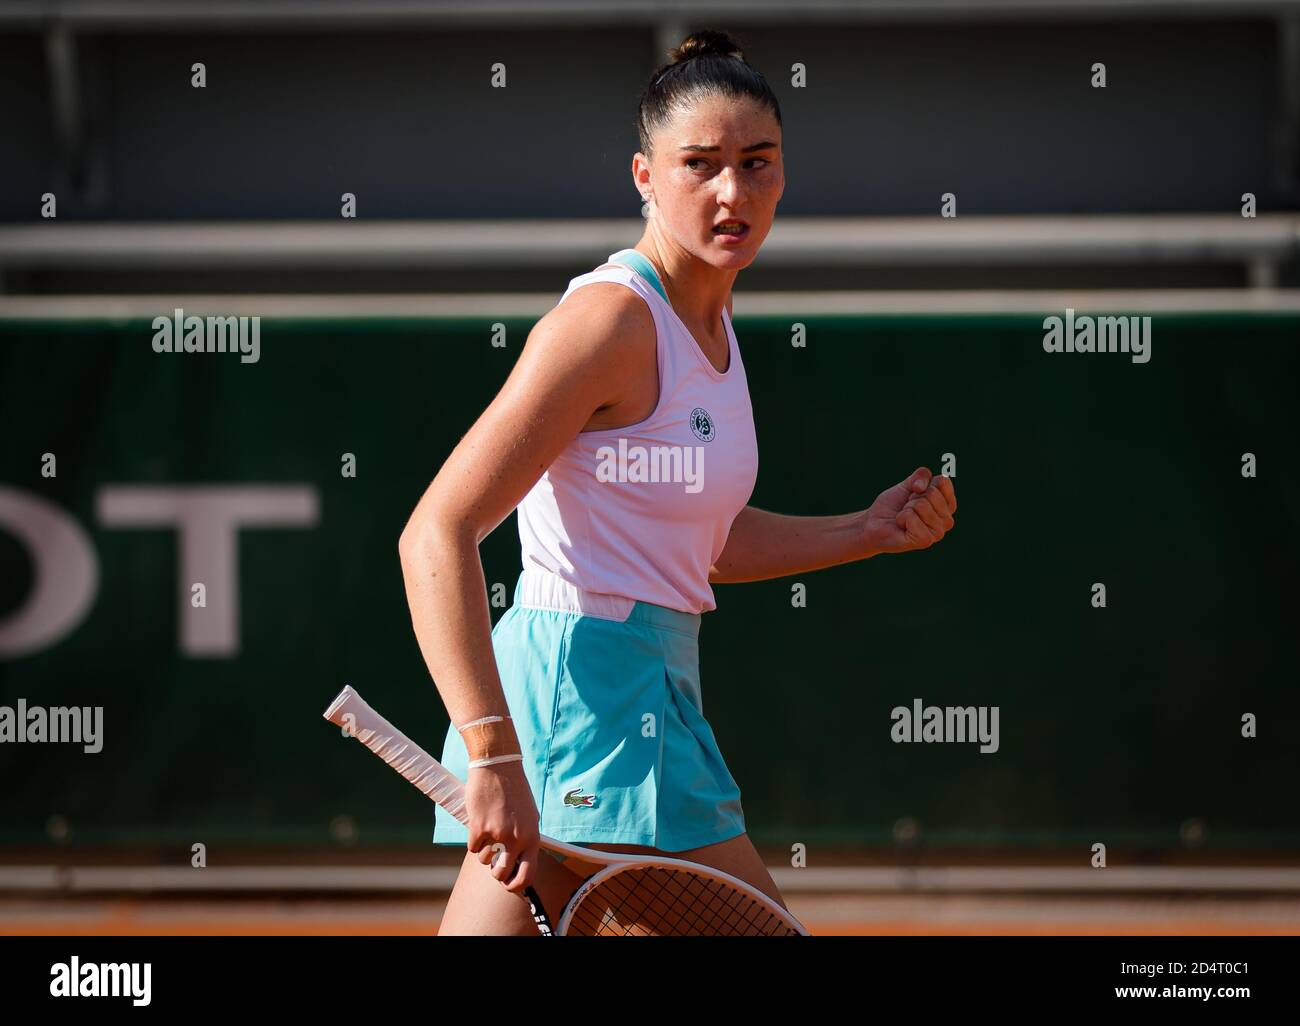 lsa Jacquemot de Francia en acción contra Alina Charaeva de Rusia durante la final de Junio del Roland Garros 2020, Grand Slam torneo de tenis, Foto de stock